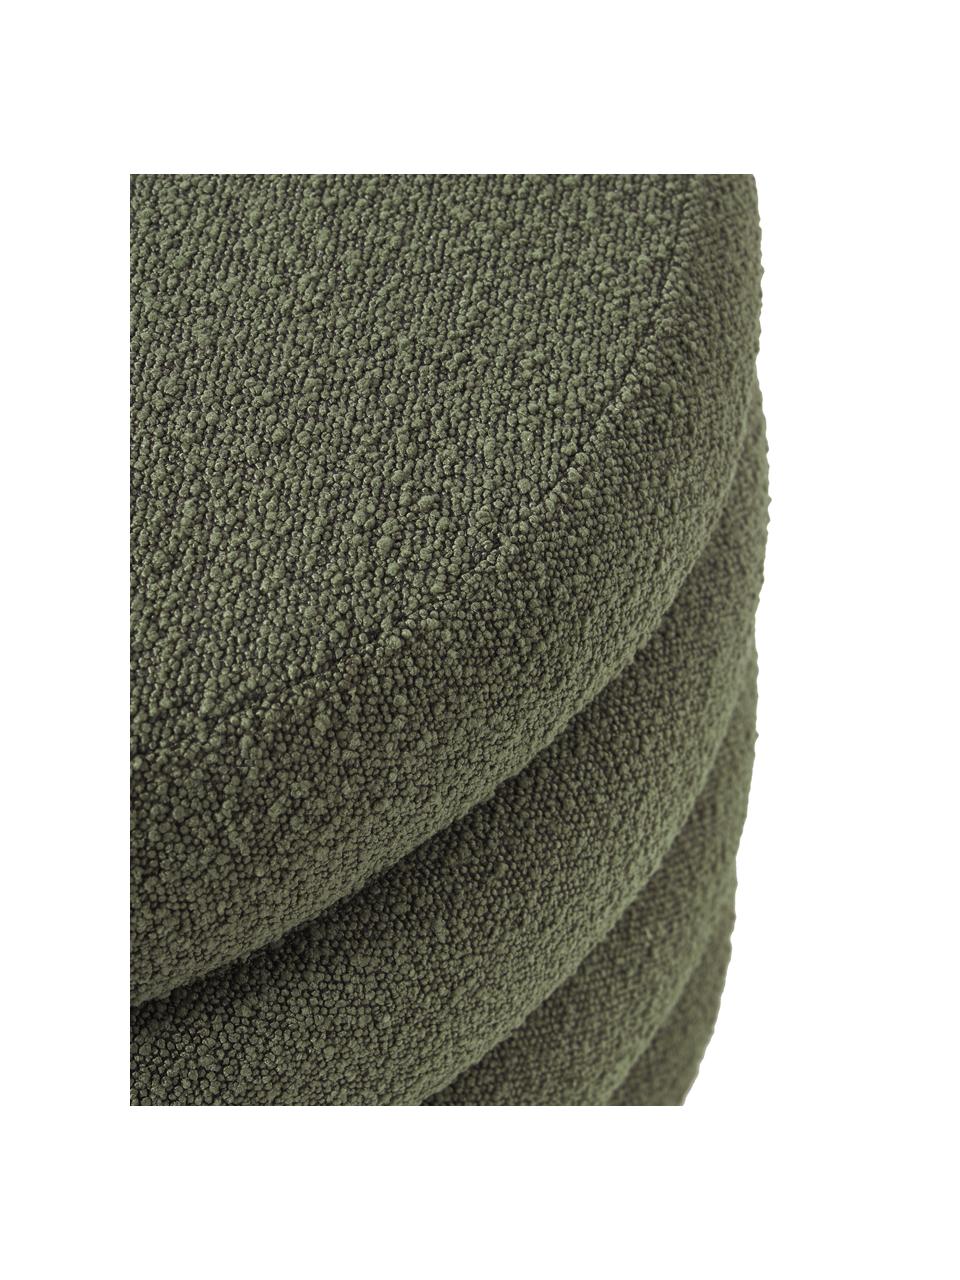 Grand tabouret en tissu bouclé avec coffre de rangement Alto, Tissu bouclé vert, Ø 69 x haut. 44 cm